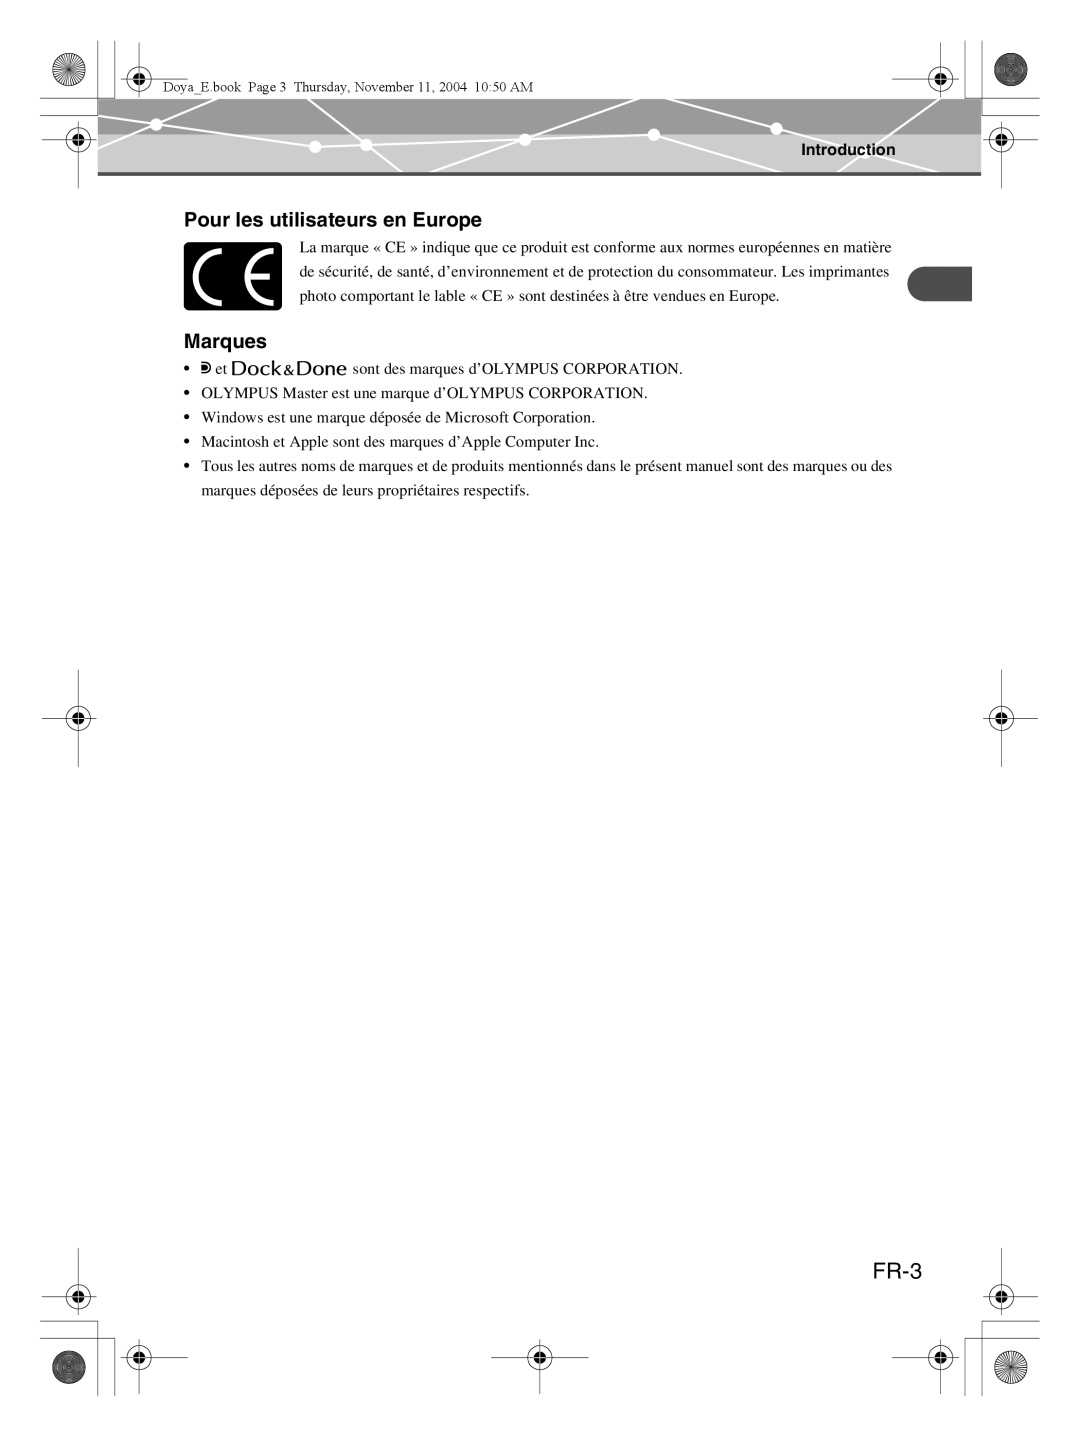 Olympus P-S100 user manual FR-3, Pour les utilisateurs en Europe, Marques, Introduction 